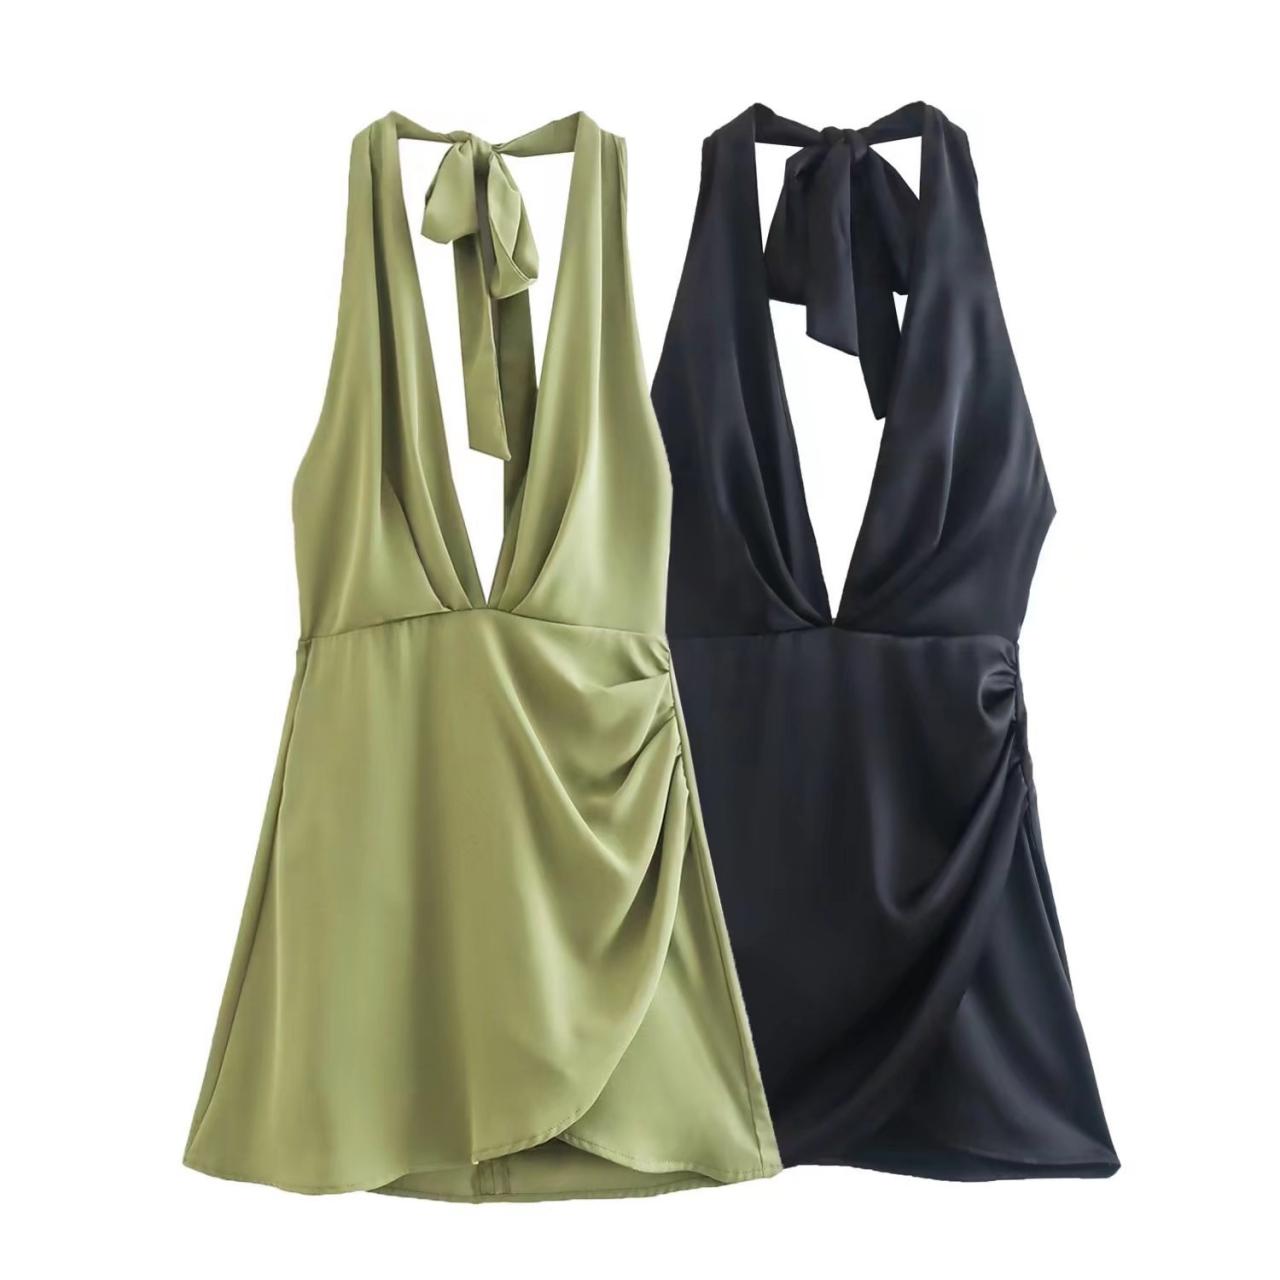 Hanging Neck V-neck Solid Color Versatile Waistband Open Back Dress Short Skirt